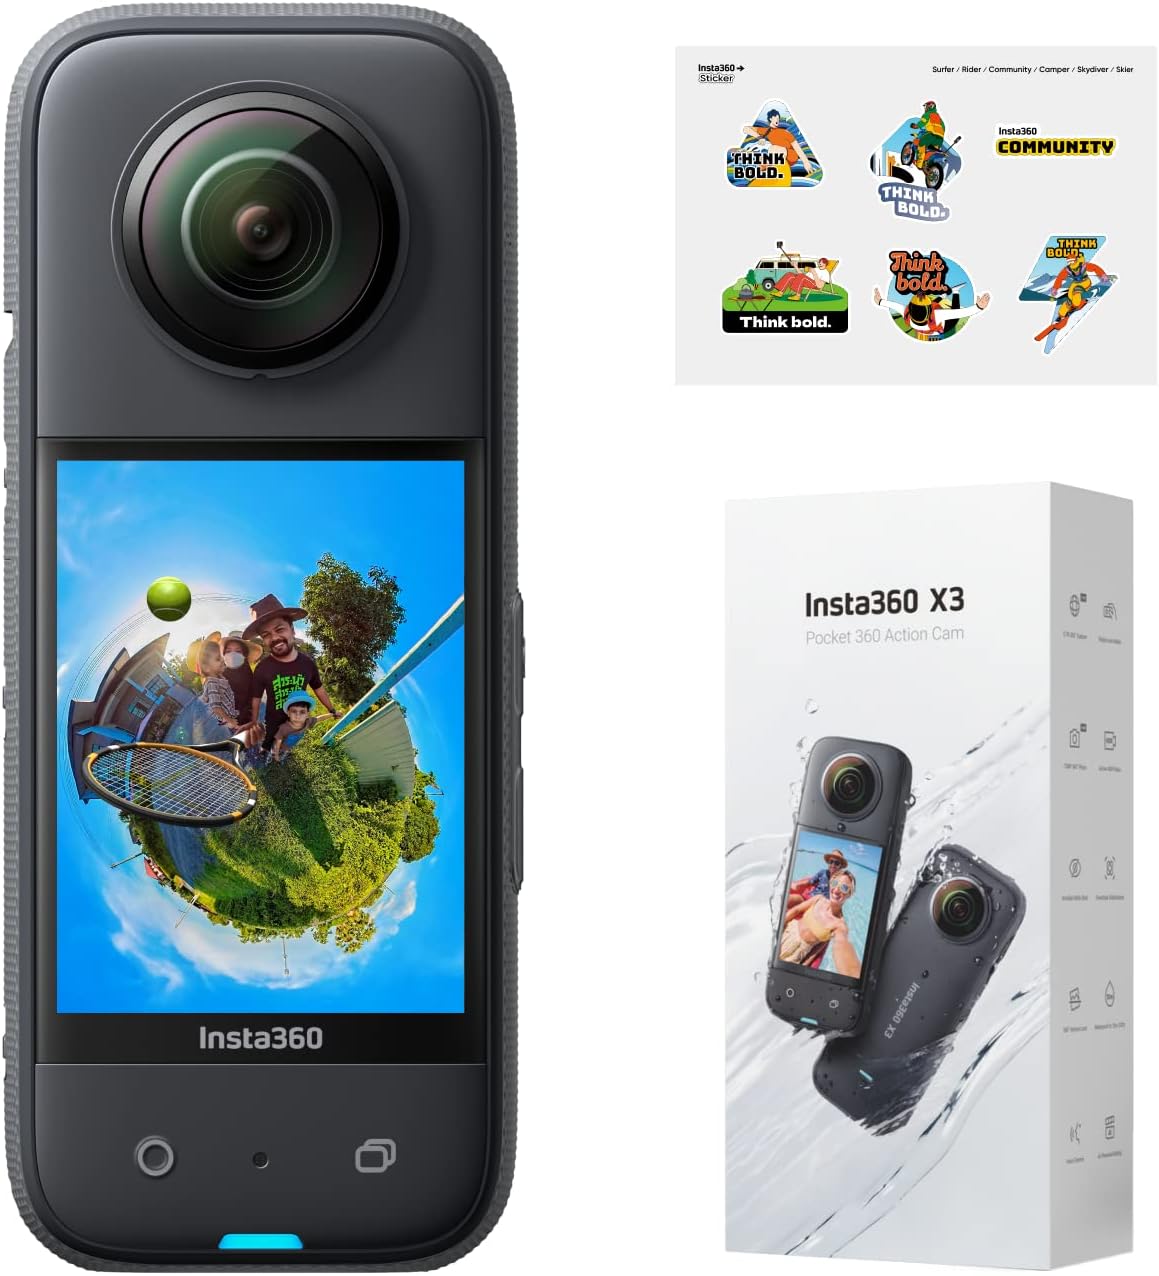 Insta360 X3 Pocket 360 Action Camera